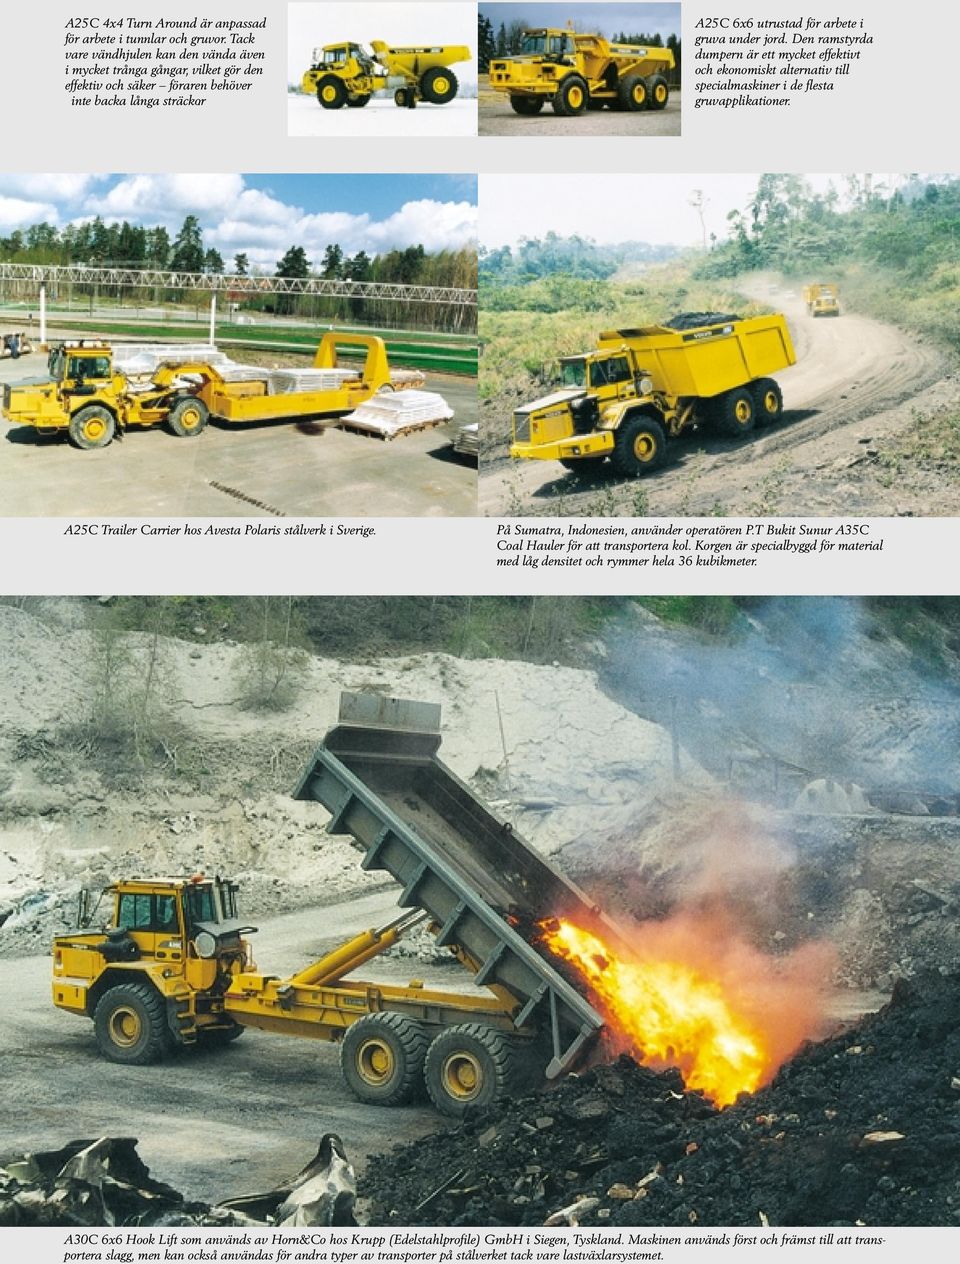 Den ramstyrda dumpern är ett mycket effektivt och ekonomiskt alternativ till specialmaskiner i de flesta gruvapplikationer. A25C Trailer Carrier hos Avesta Polaris stålverk i Sverige.